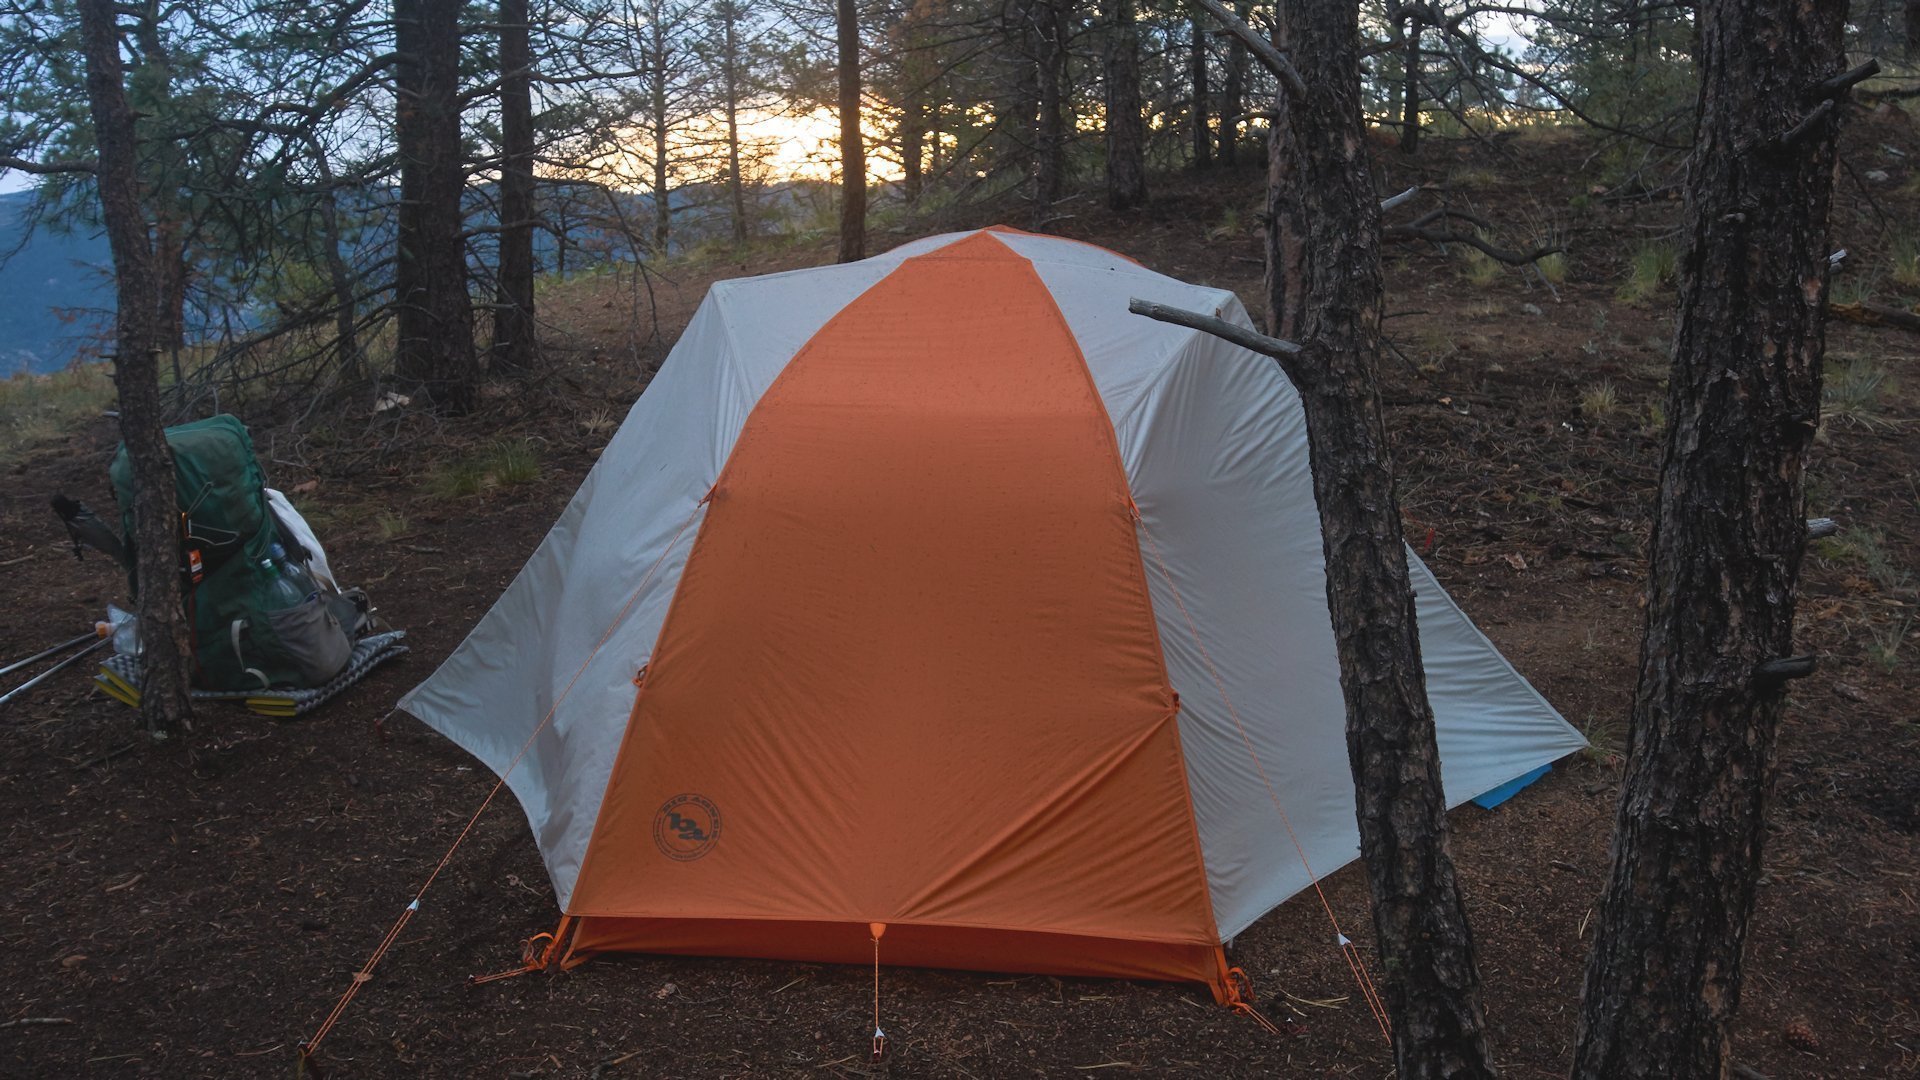 Colorado Trail: Unsere Campsite im Segment 2 des Colorado Trail